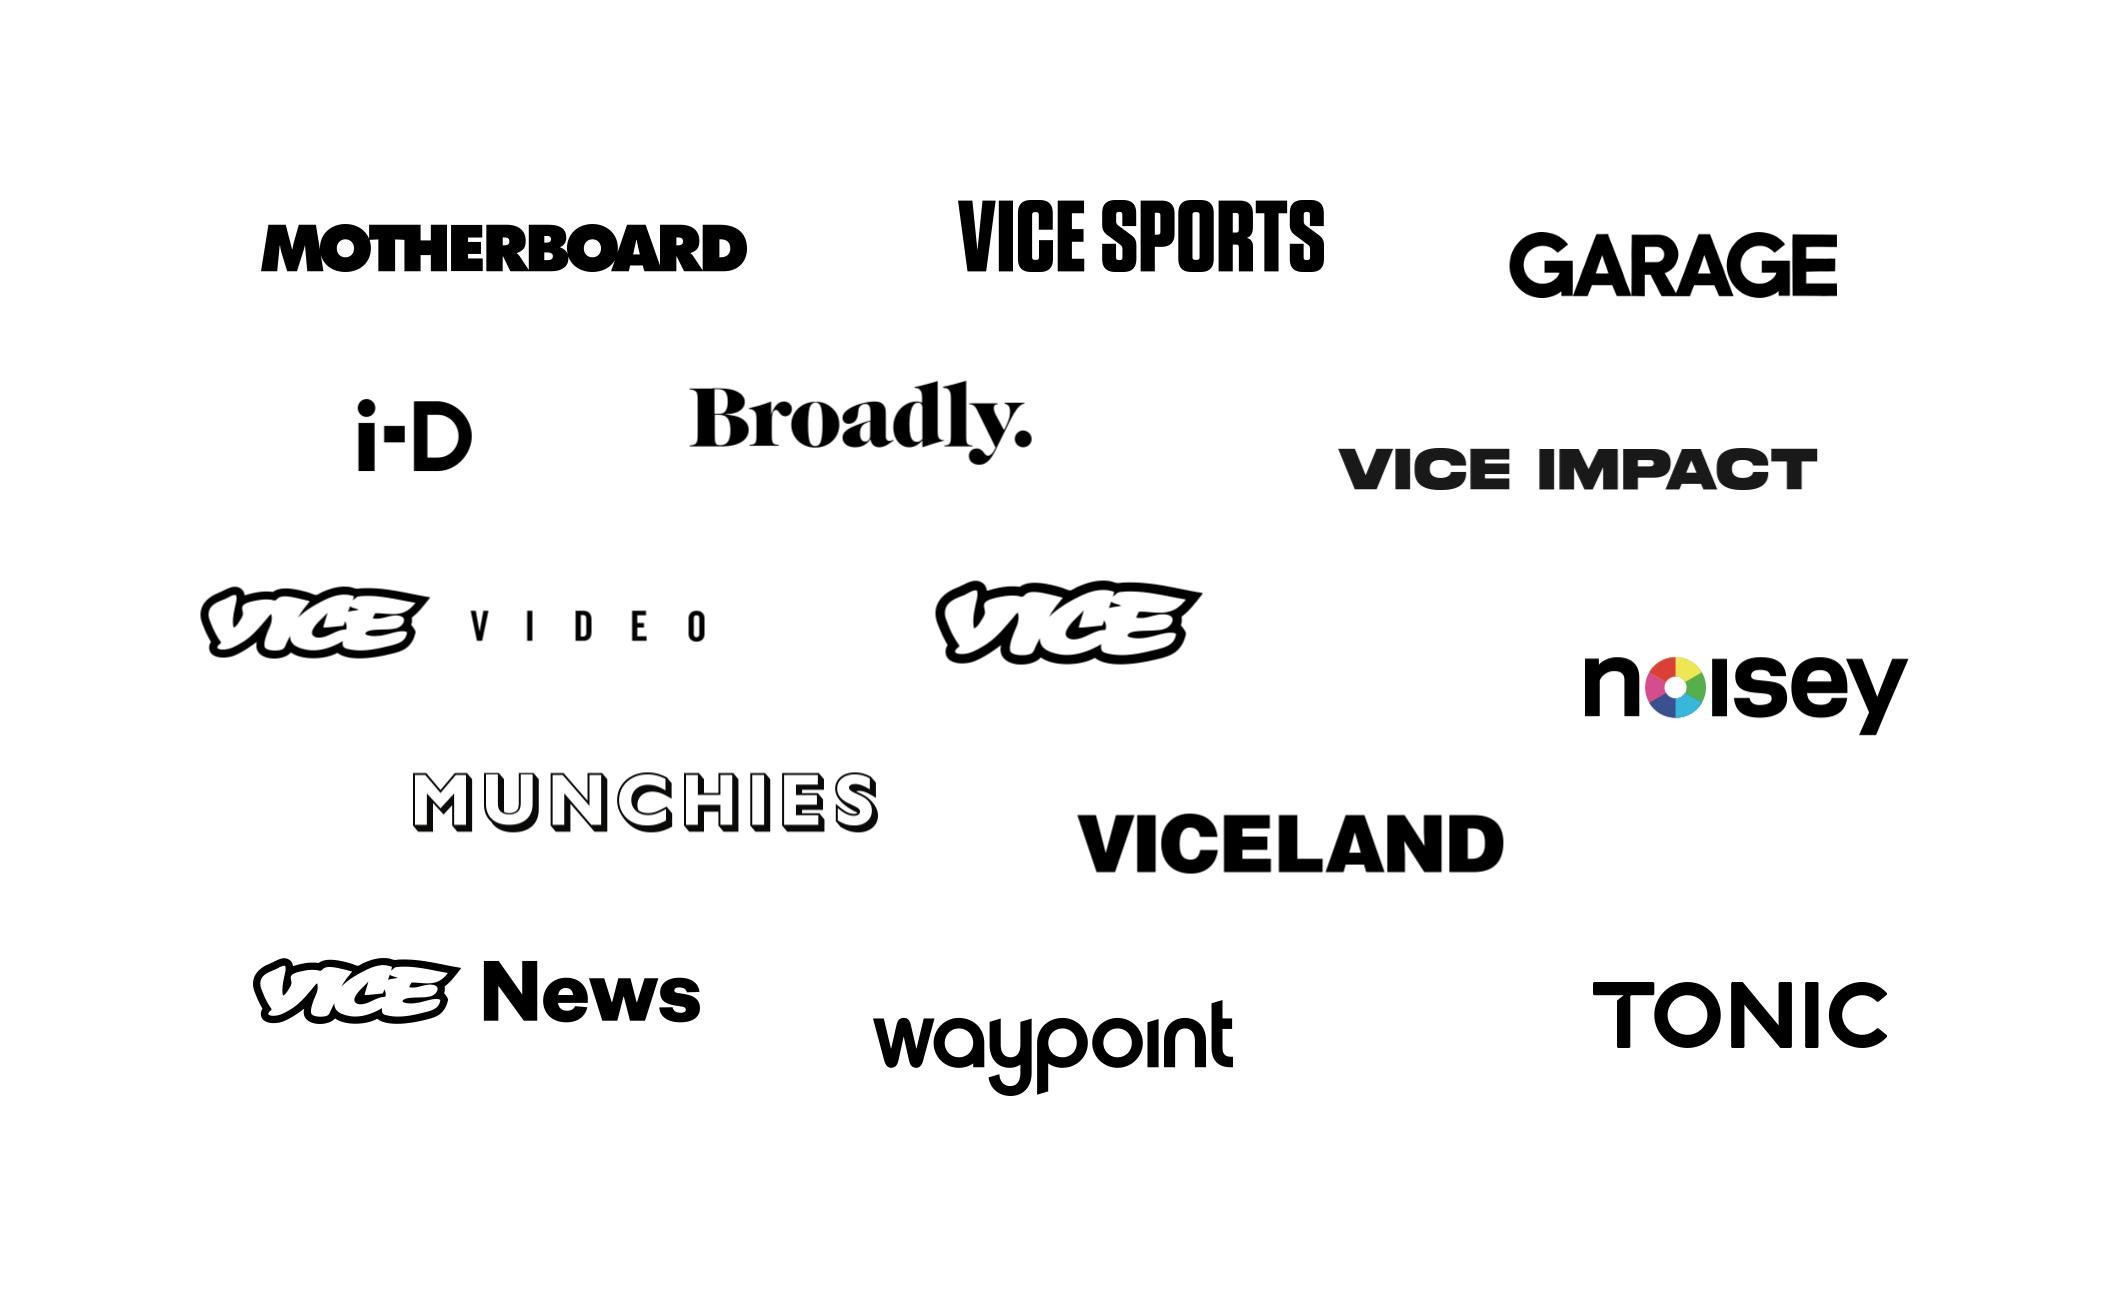 VICE's network of verticals in 2016